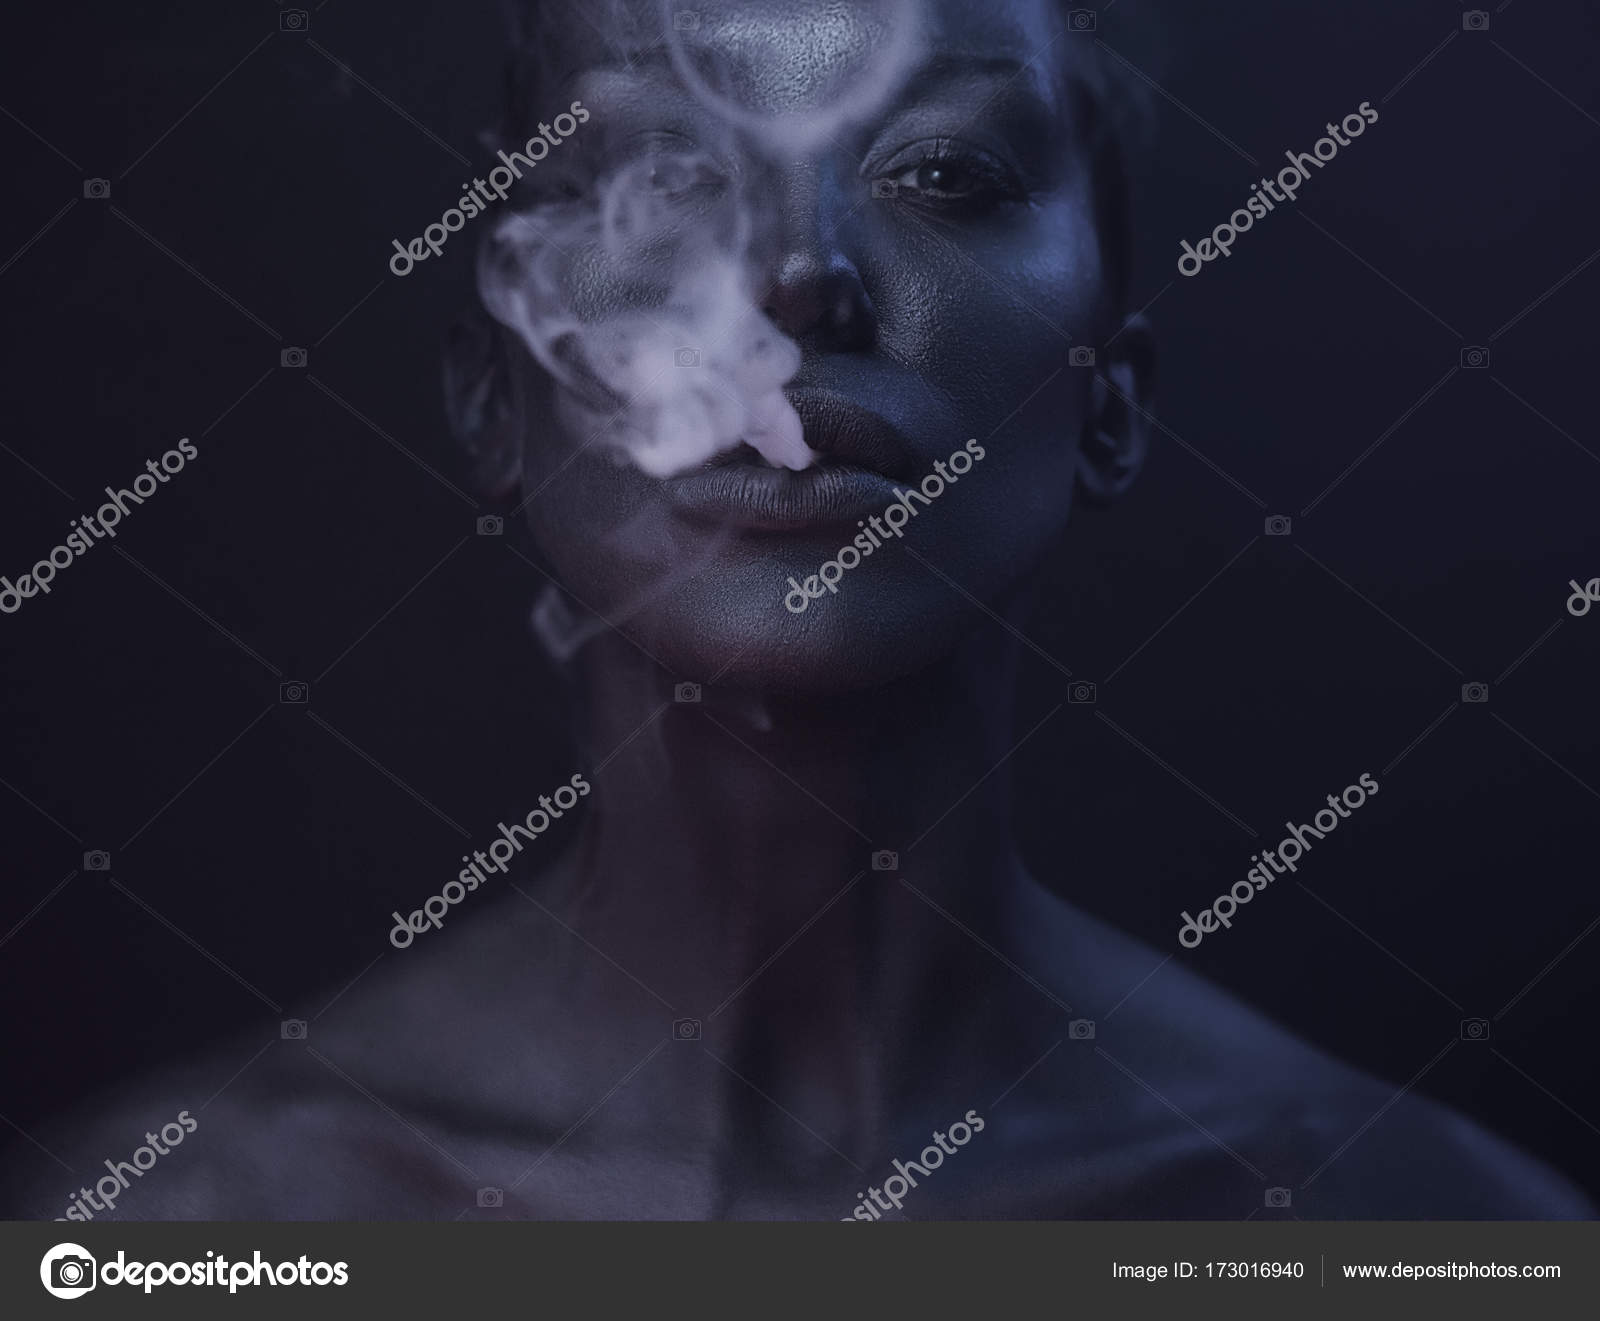 Beautiful smoke photo